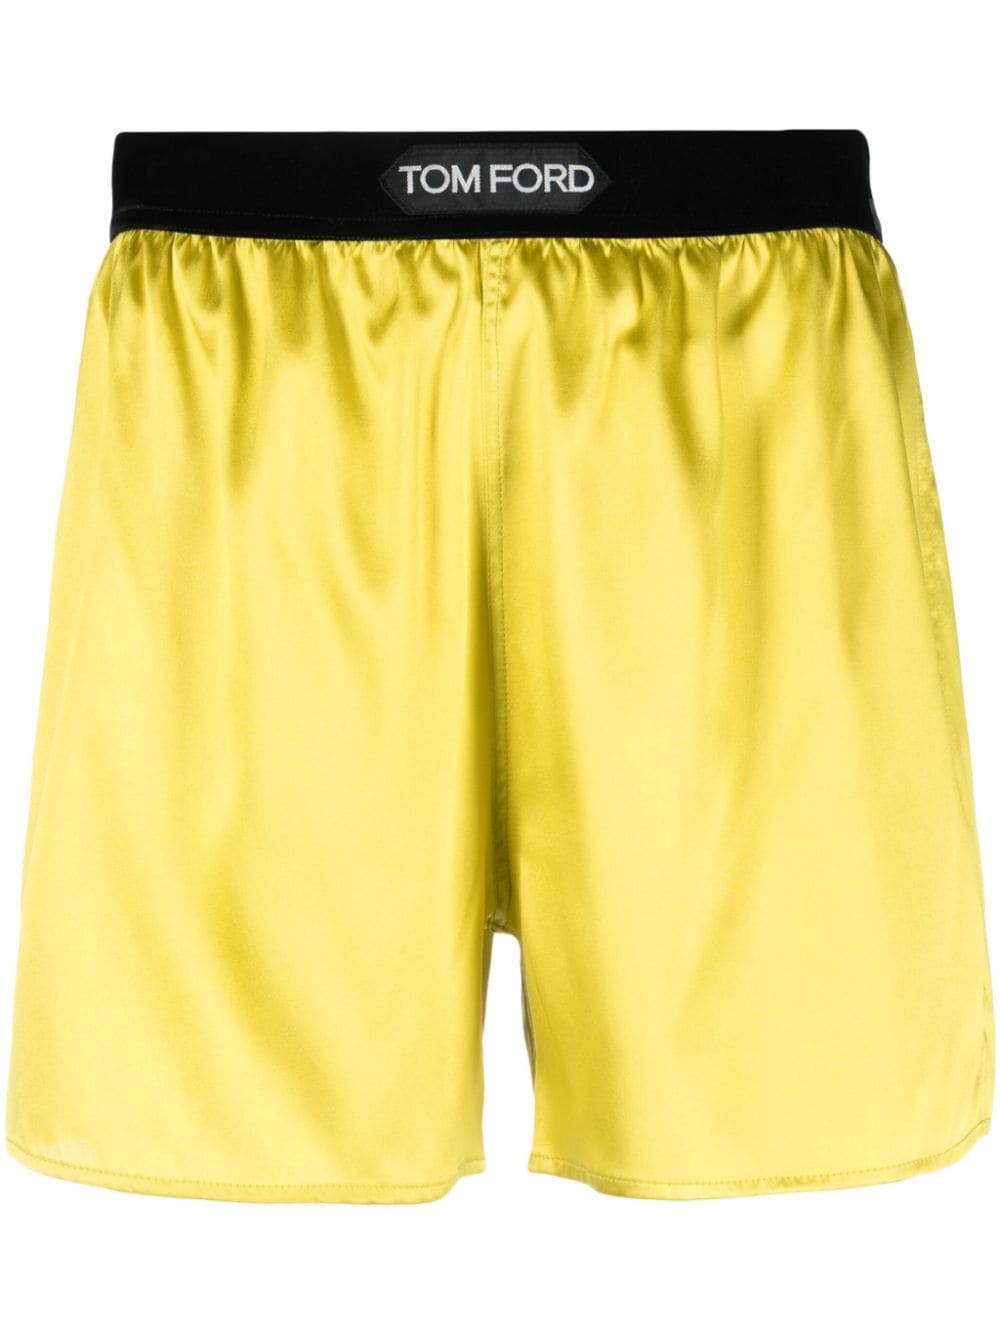 TOM FORD logo-waistband Silk Shorts - Farfetch